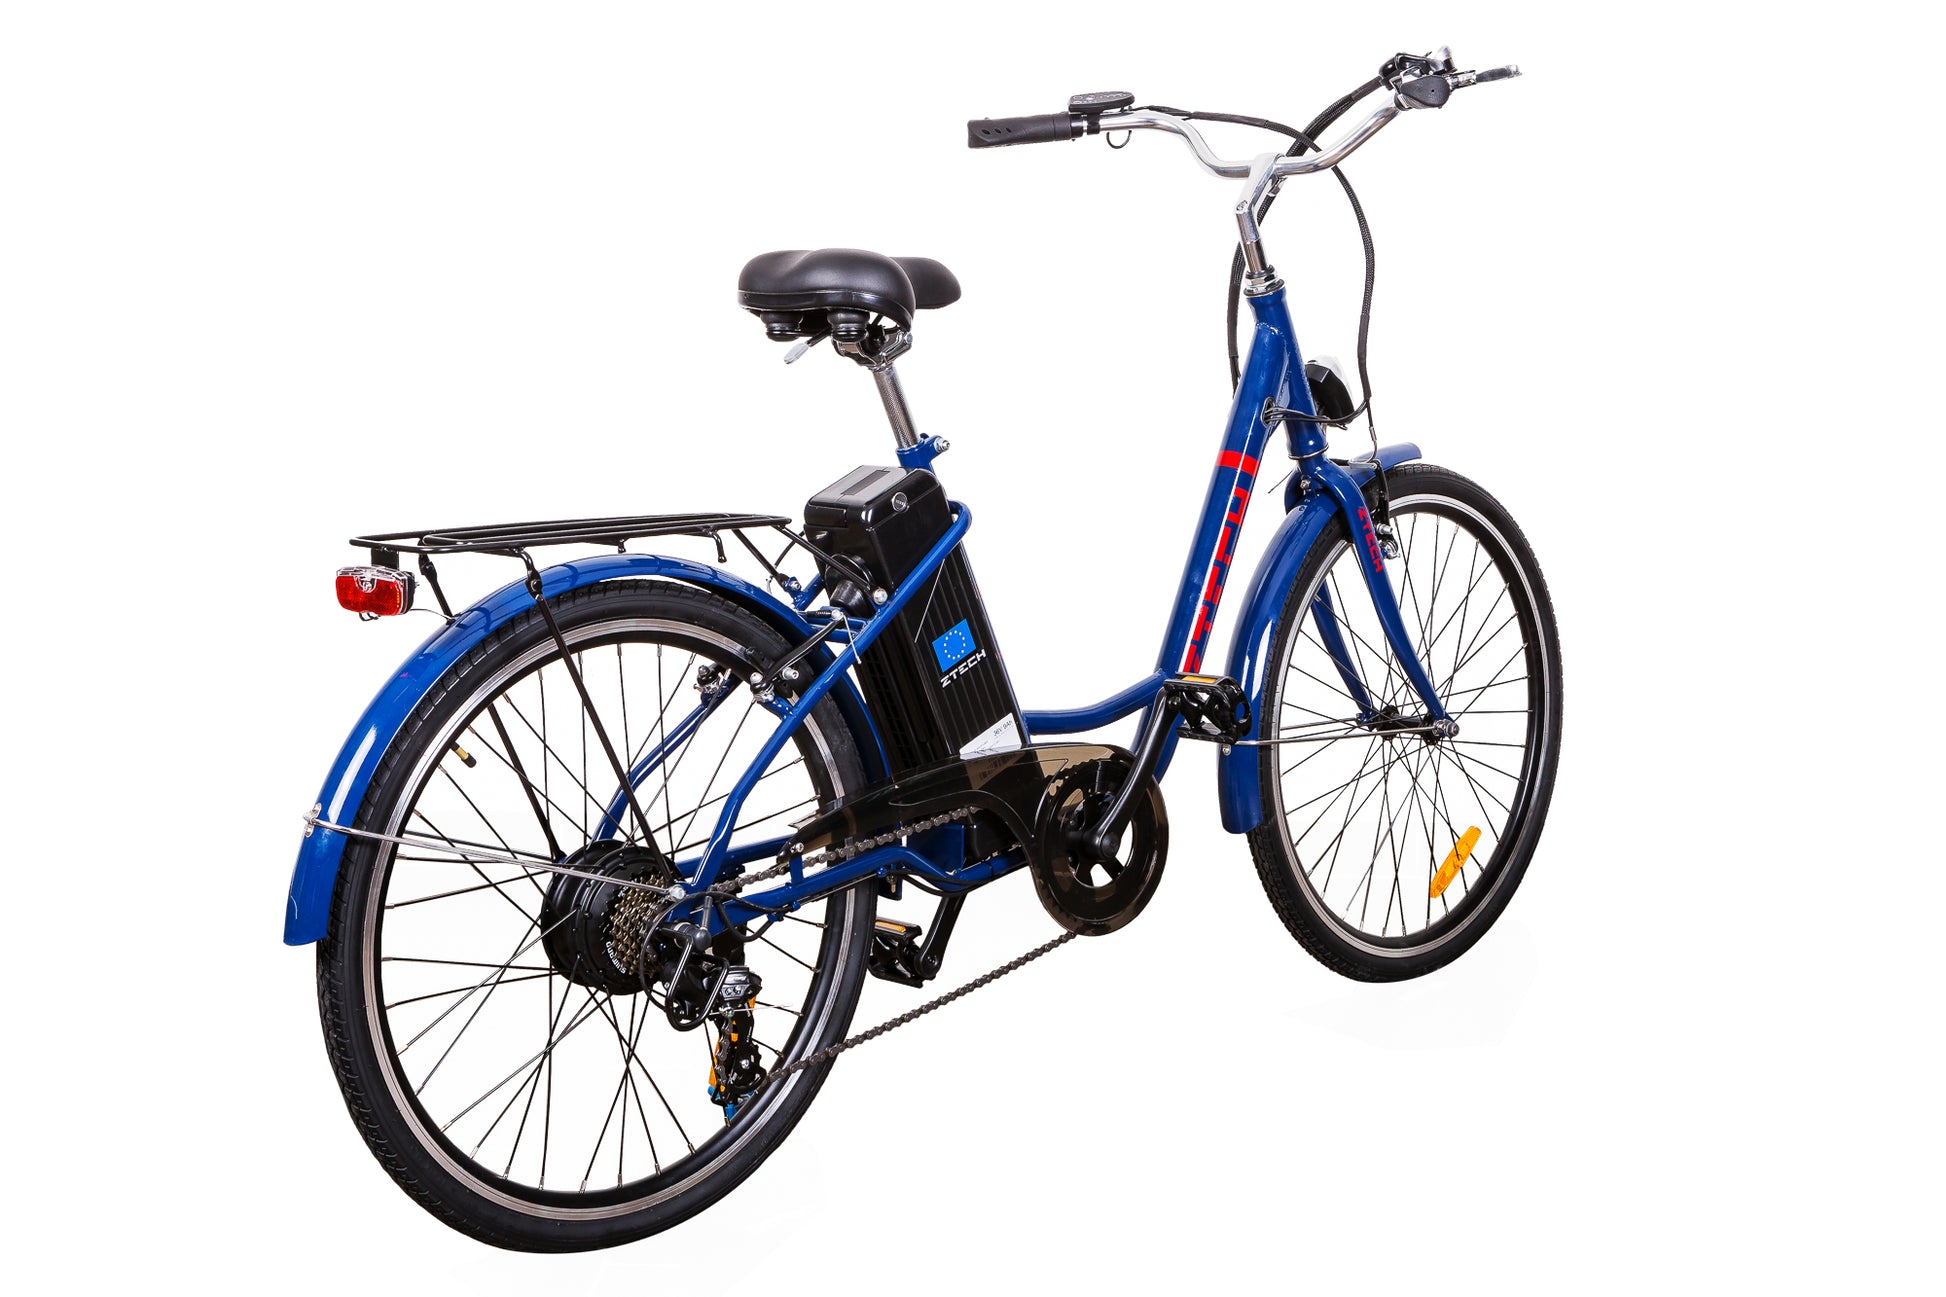 bicicleta zt-32 barcelona lithium, culoare albastra